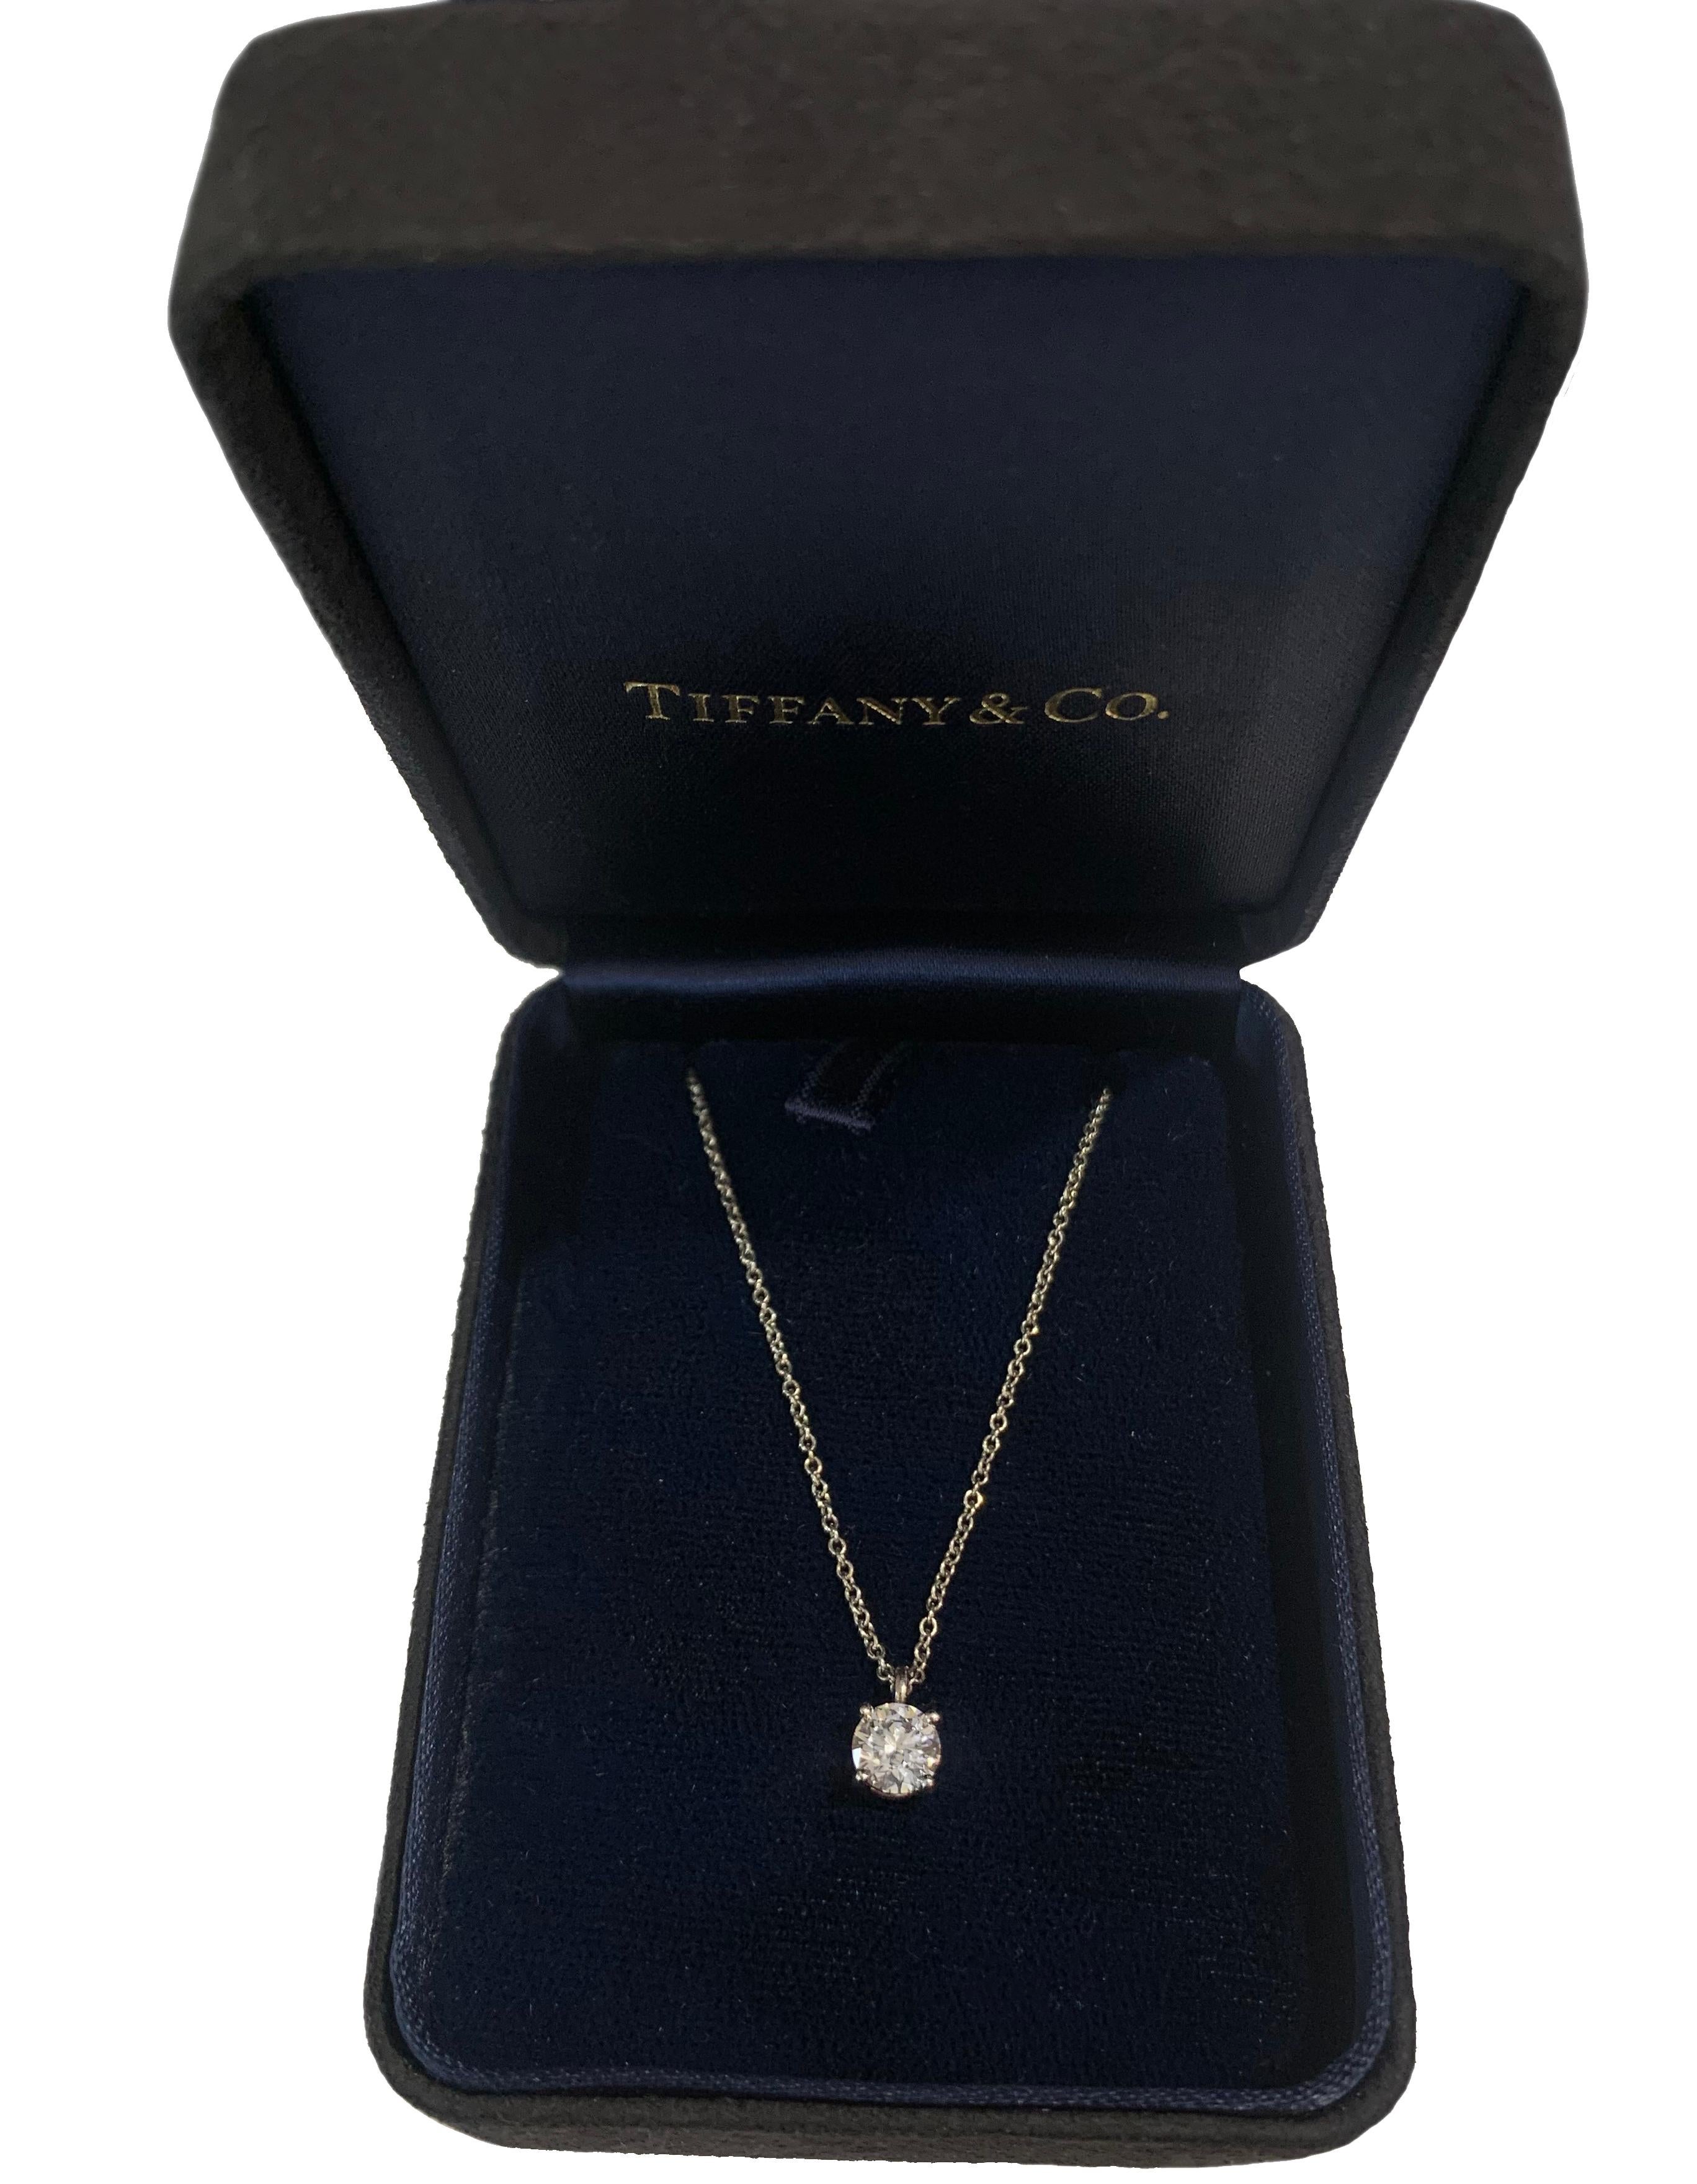 0.5 carat diamond necklace